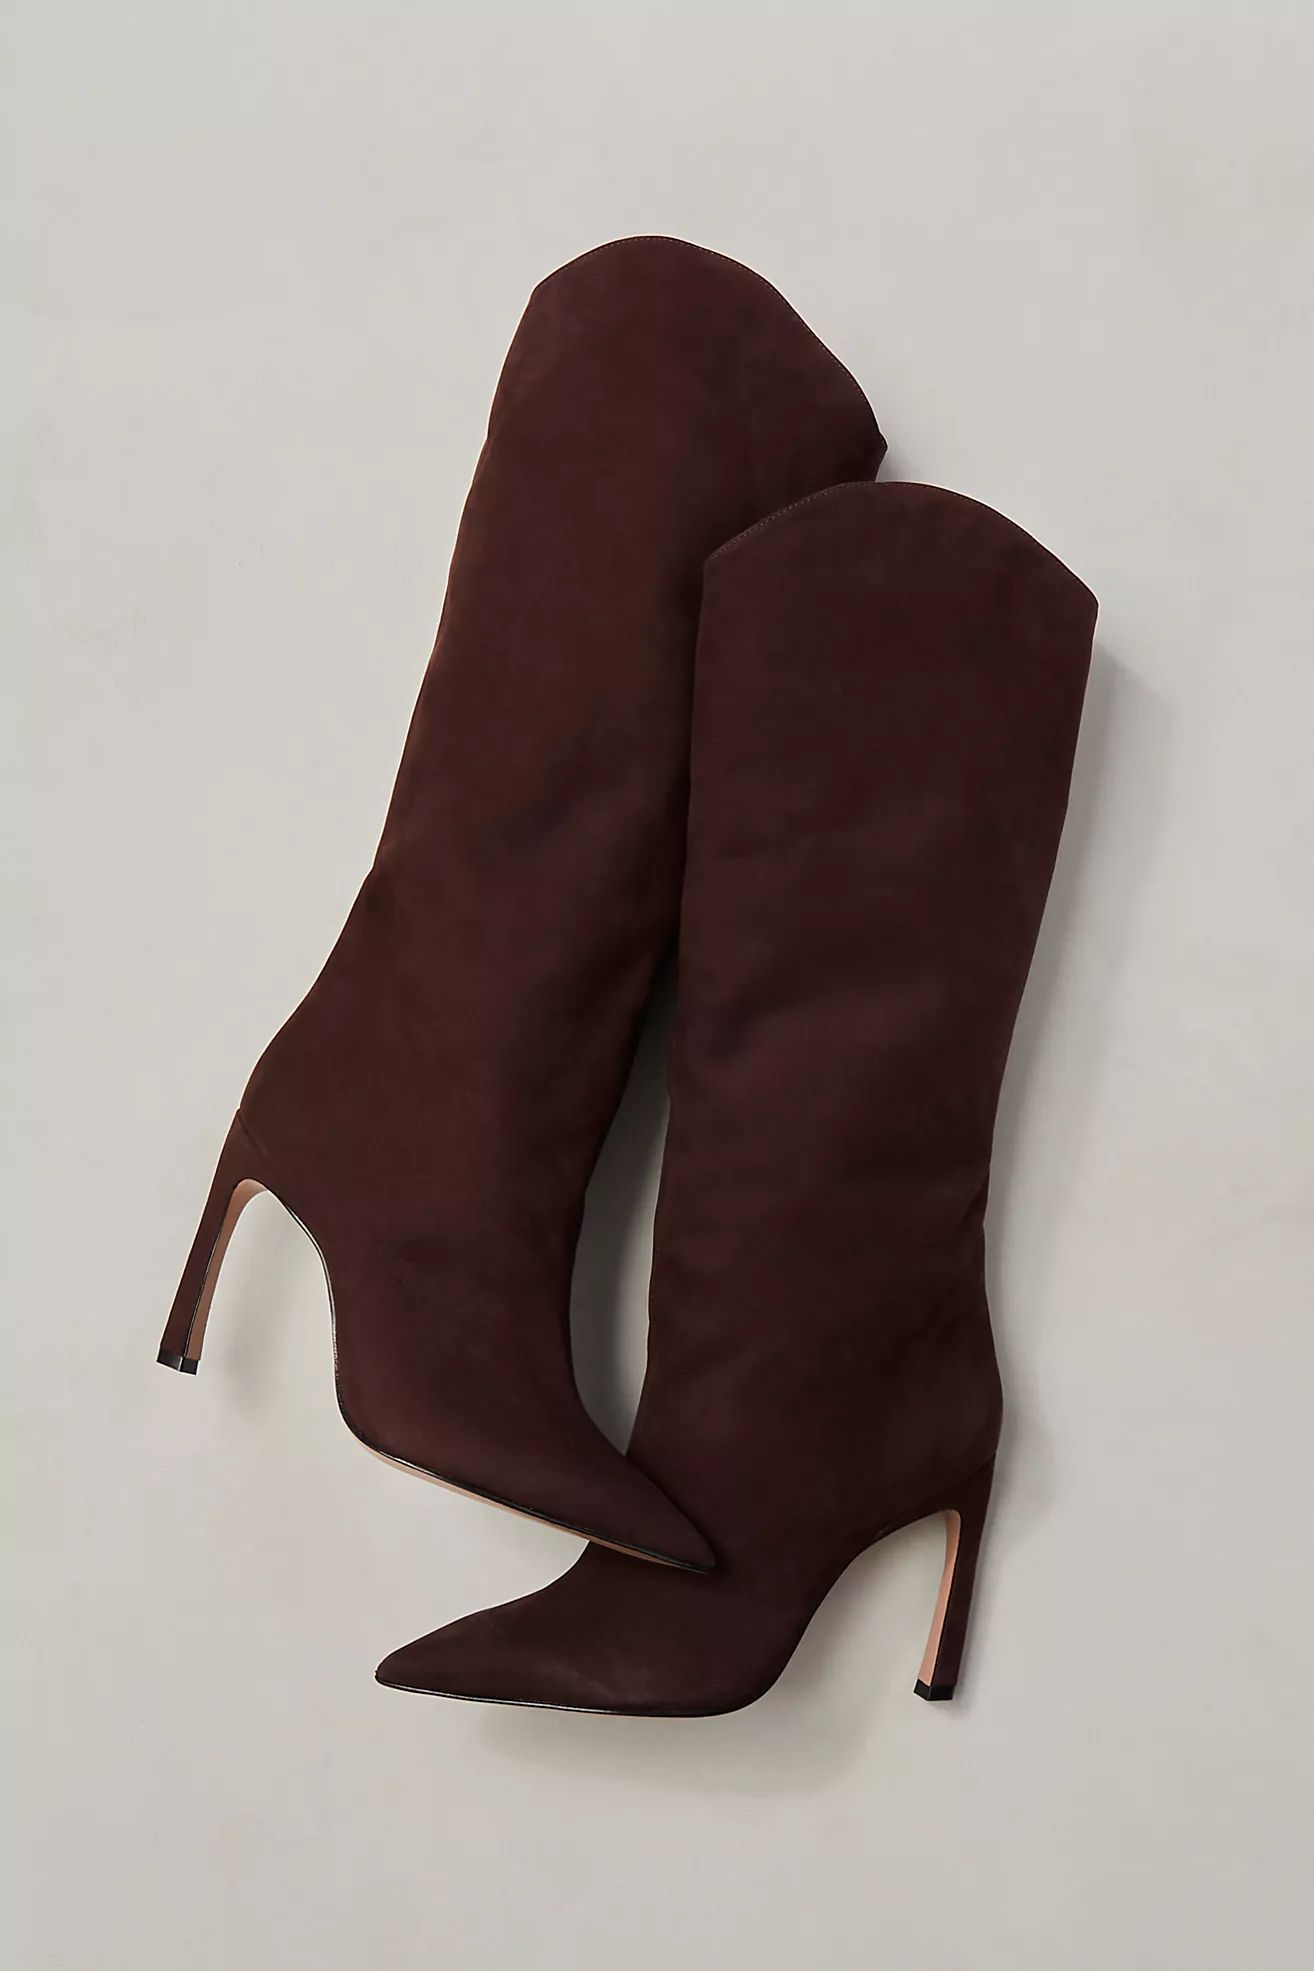 Maryana Sculpt Heel Boots | Free People (UK)